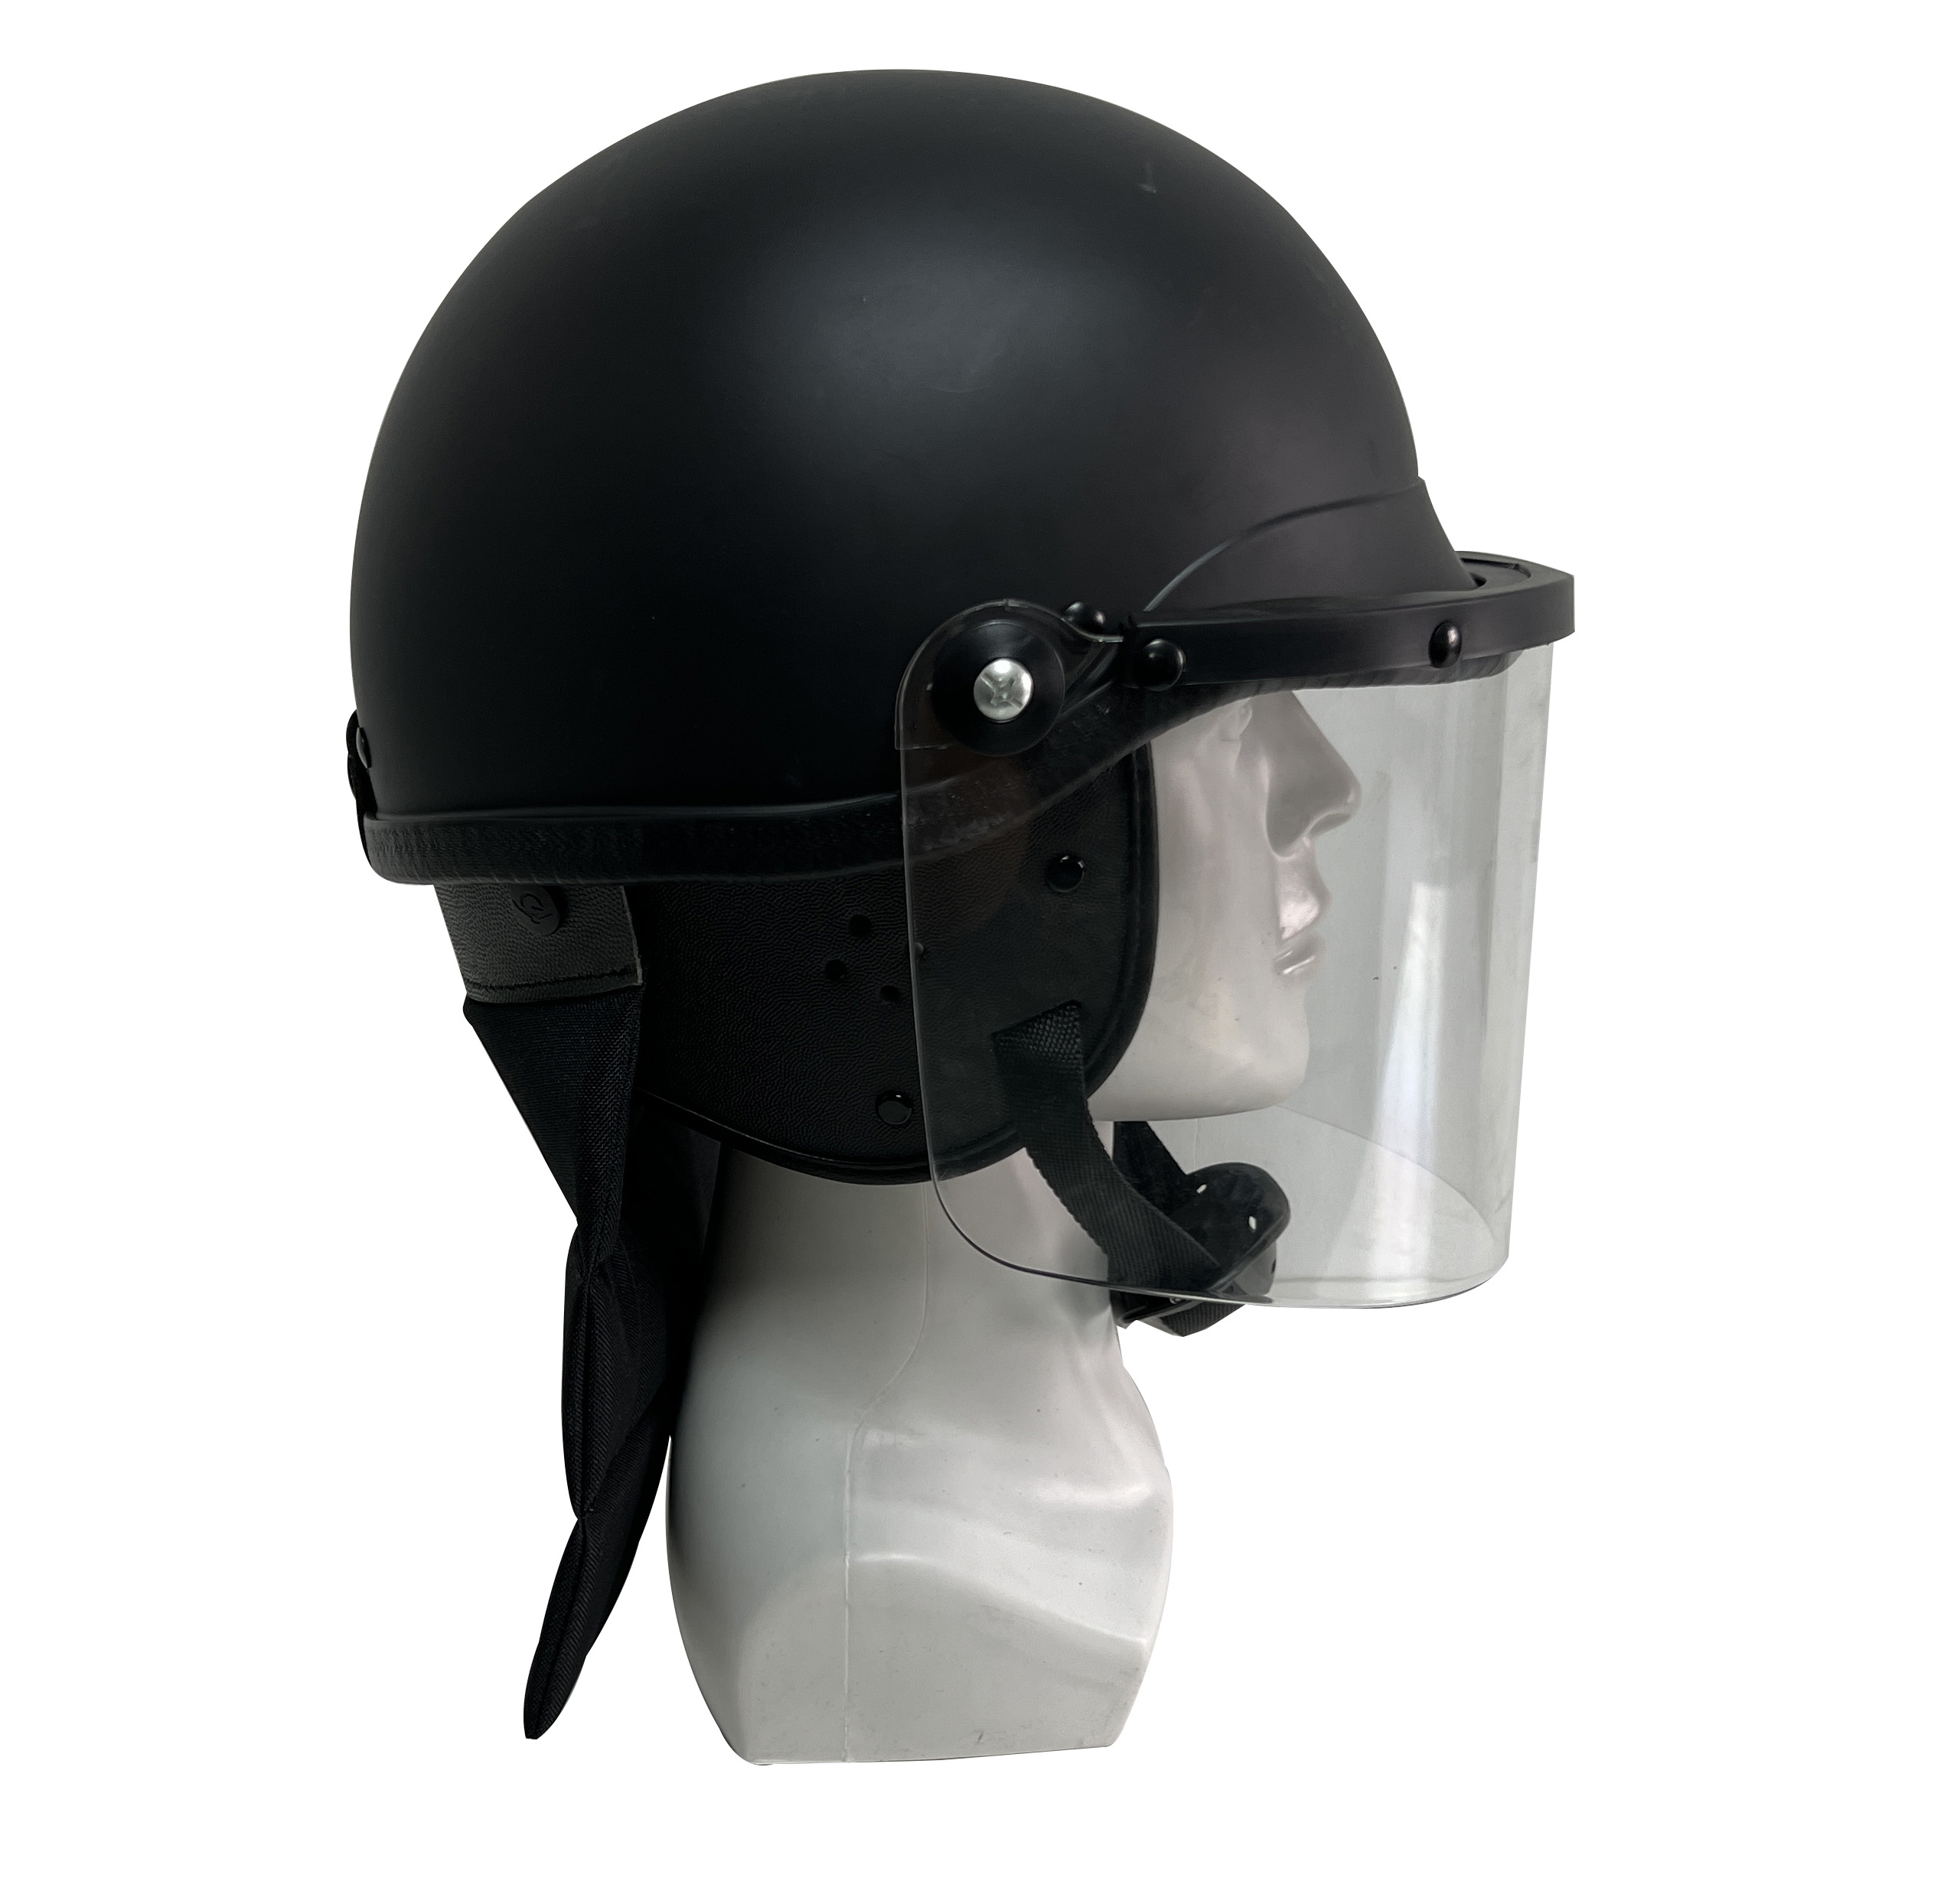 Riot Control Helmet